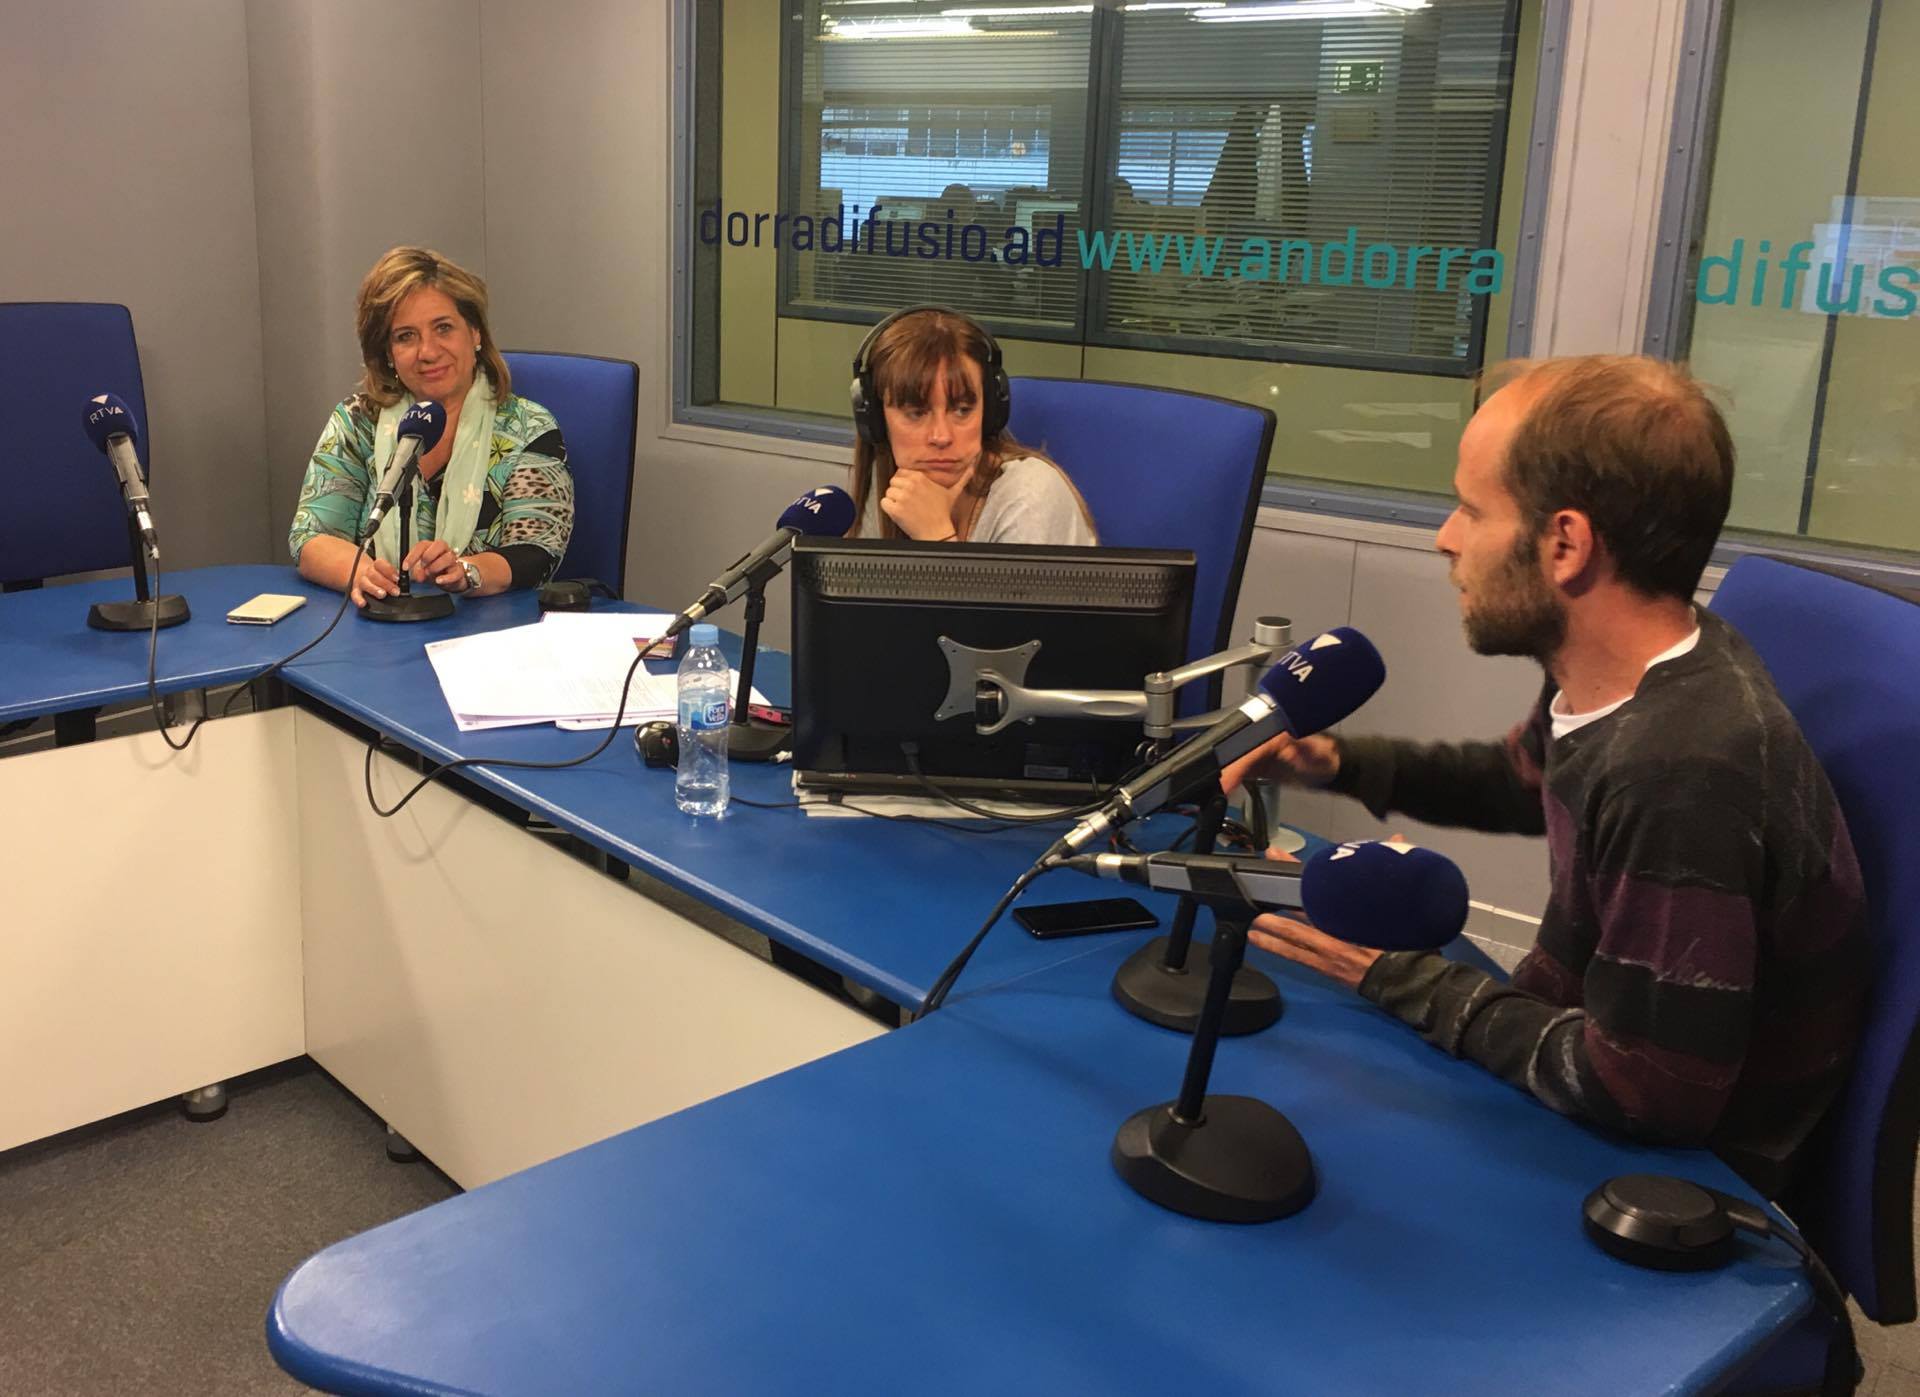 Tertúlia amb Júlia Martínez-Illescas i Manel Montoro 25 d'abril del 2017